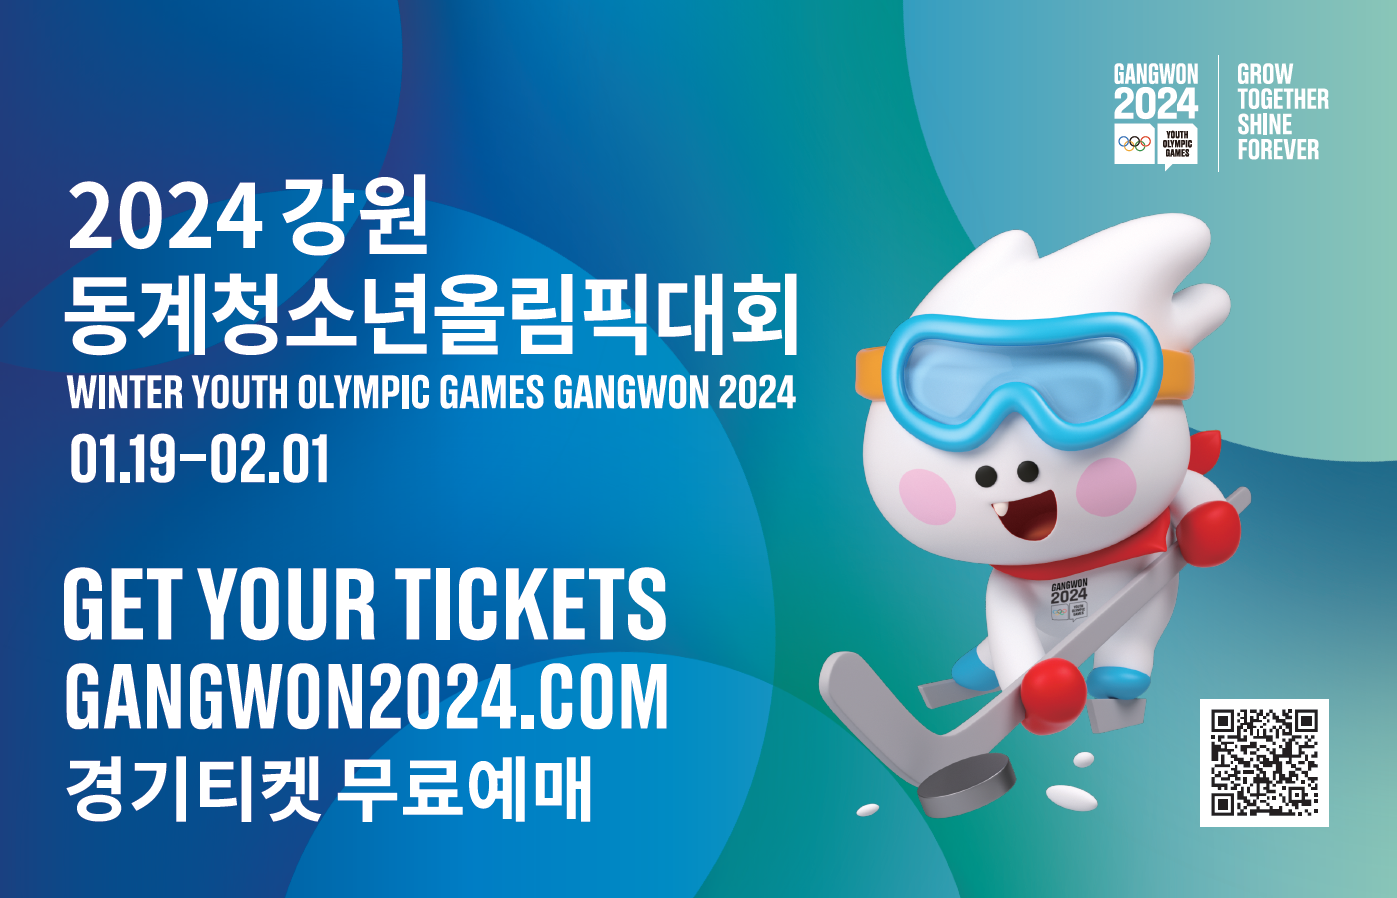 2024 강원
동계청소년올림픽대회
WINTER YOUTH OLYMPIC GAMES GANGWON 2024
01.19-02.01

GET YOUR TICKERTS
GANGWON 2024.COM
경기티켓 무료예메